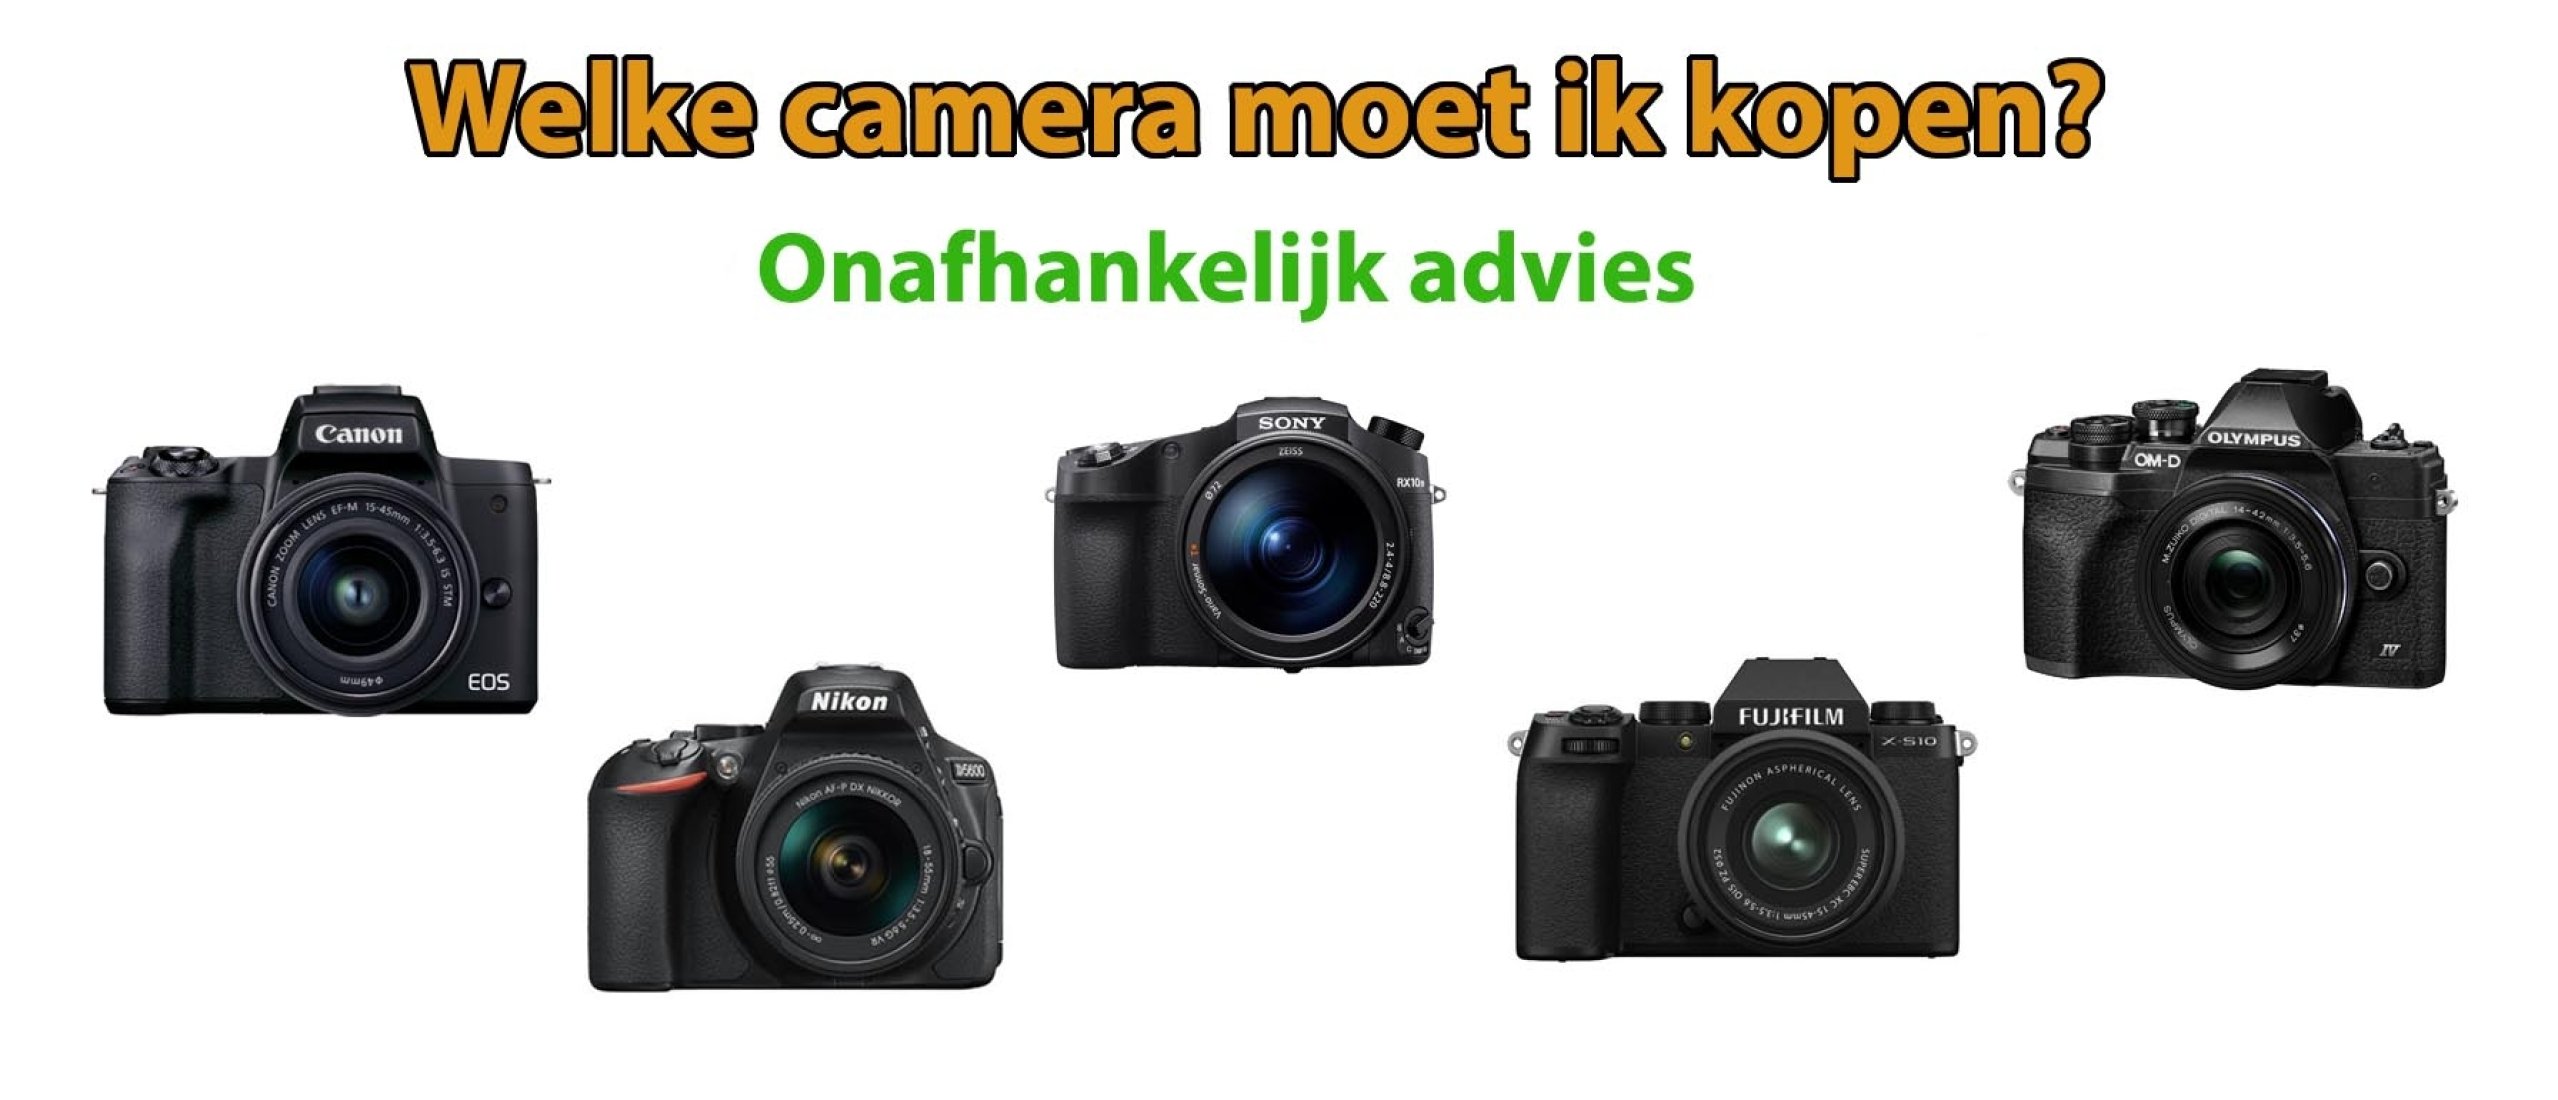 Welke camera moet ik kopen? Welke past bij mij?